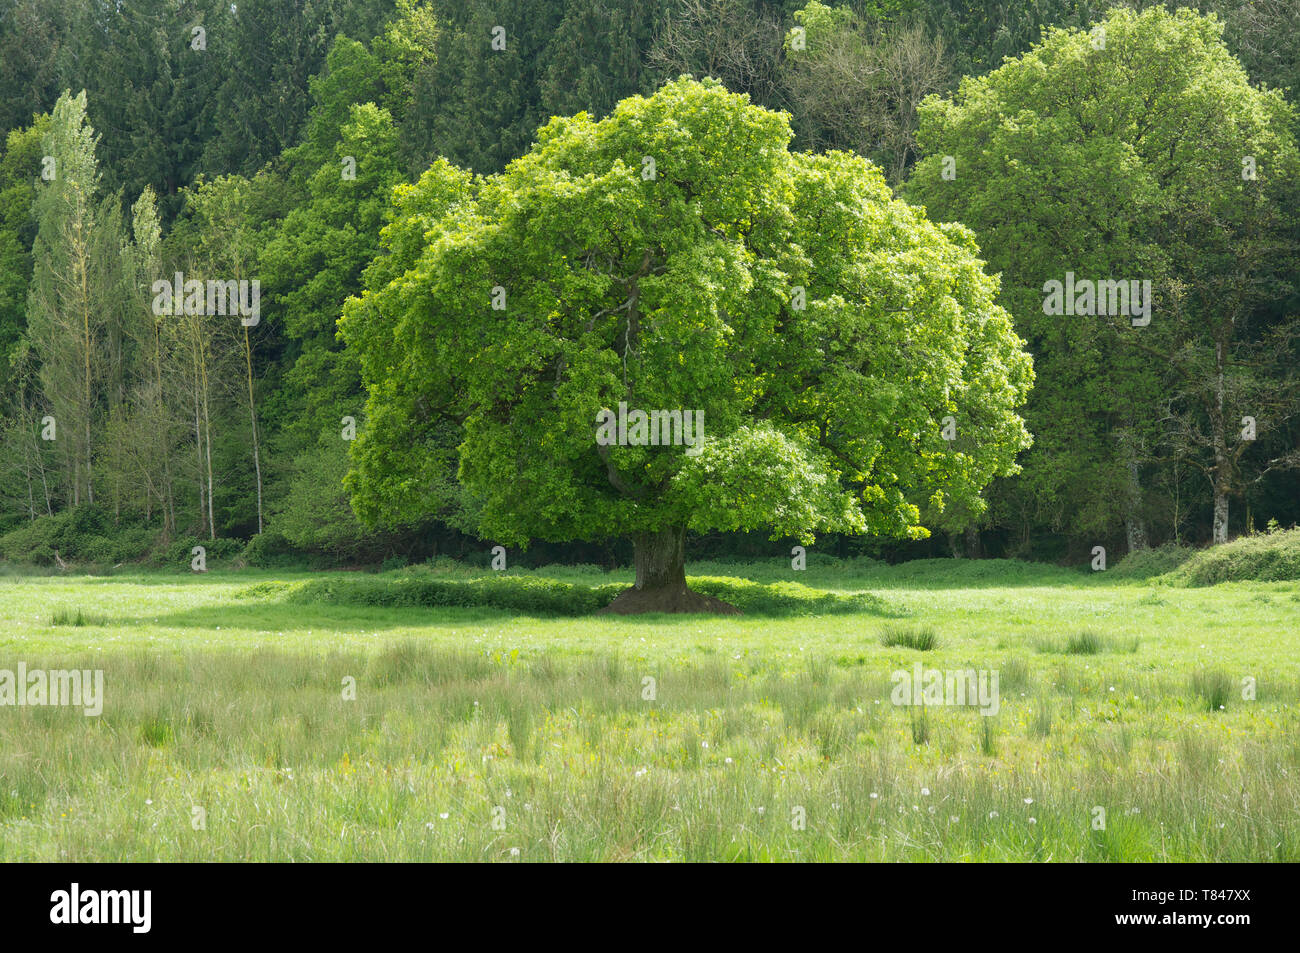 Una versión en inglés de roble (Quercus robur), las especies de árboles más comunes en el Reino Unido. Este está solo en una pradera, con un nuevo crecimiento de hojas de color verde brillante. Foto de stock